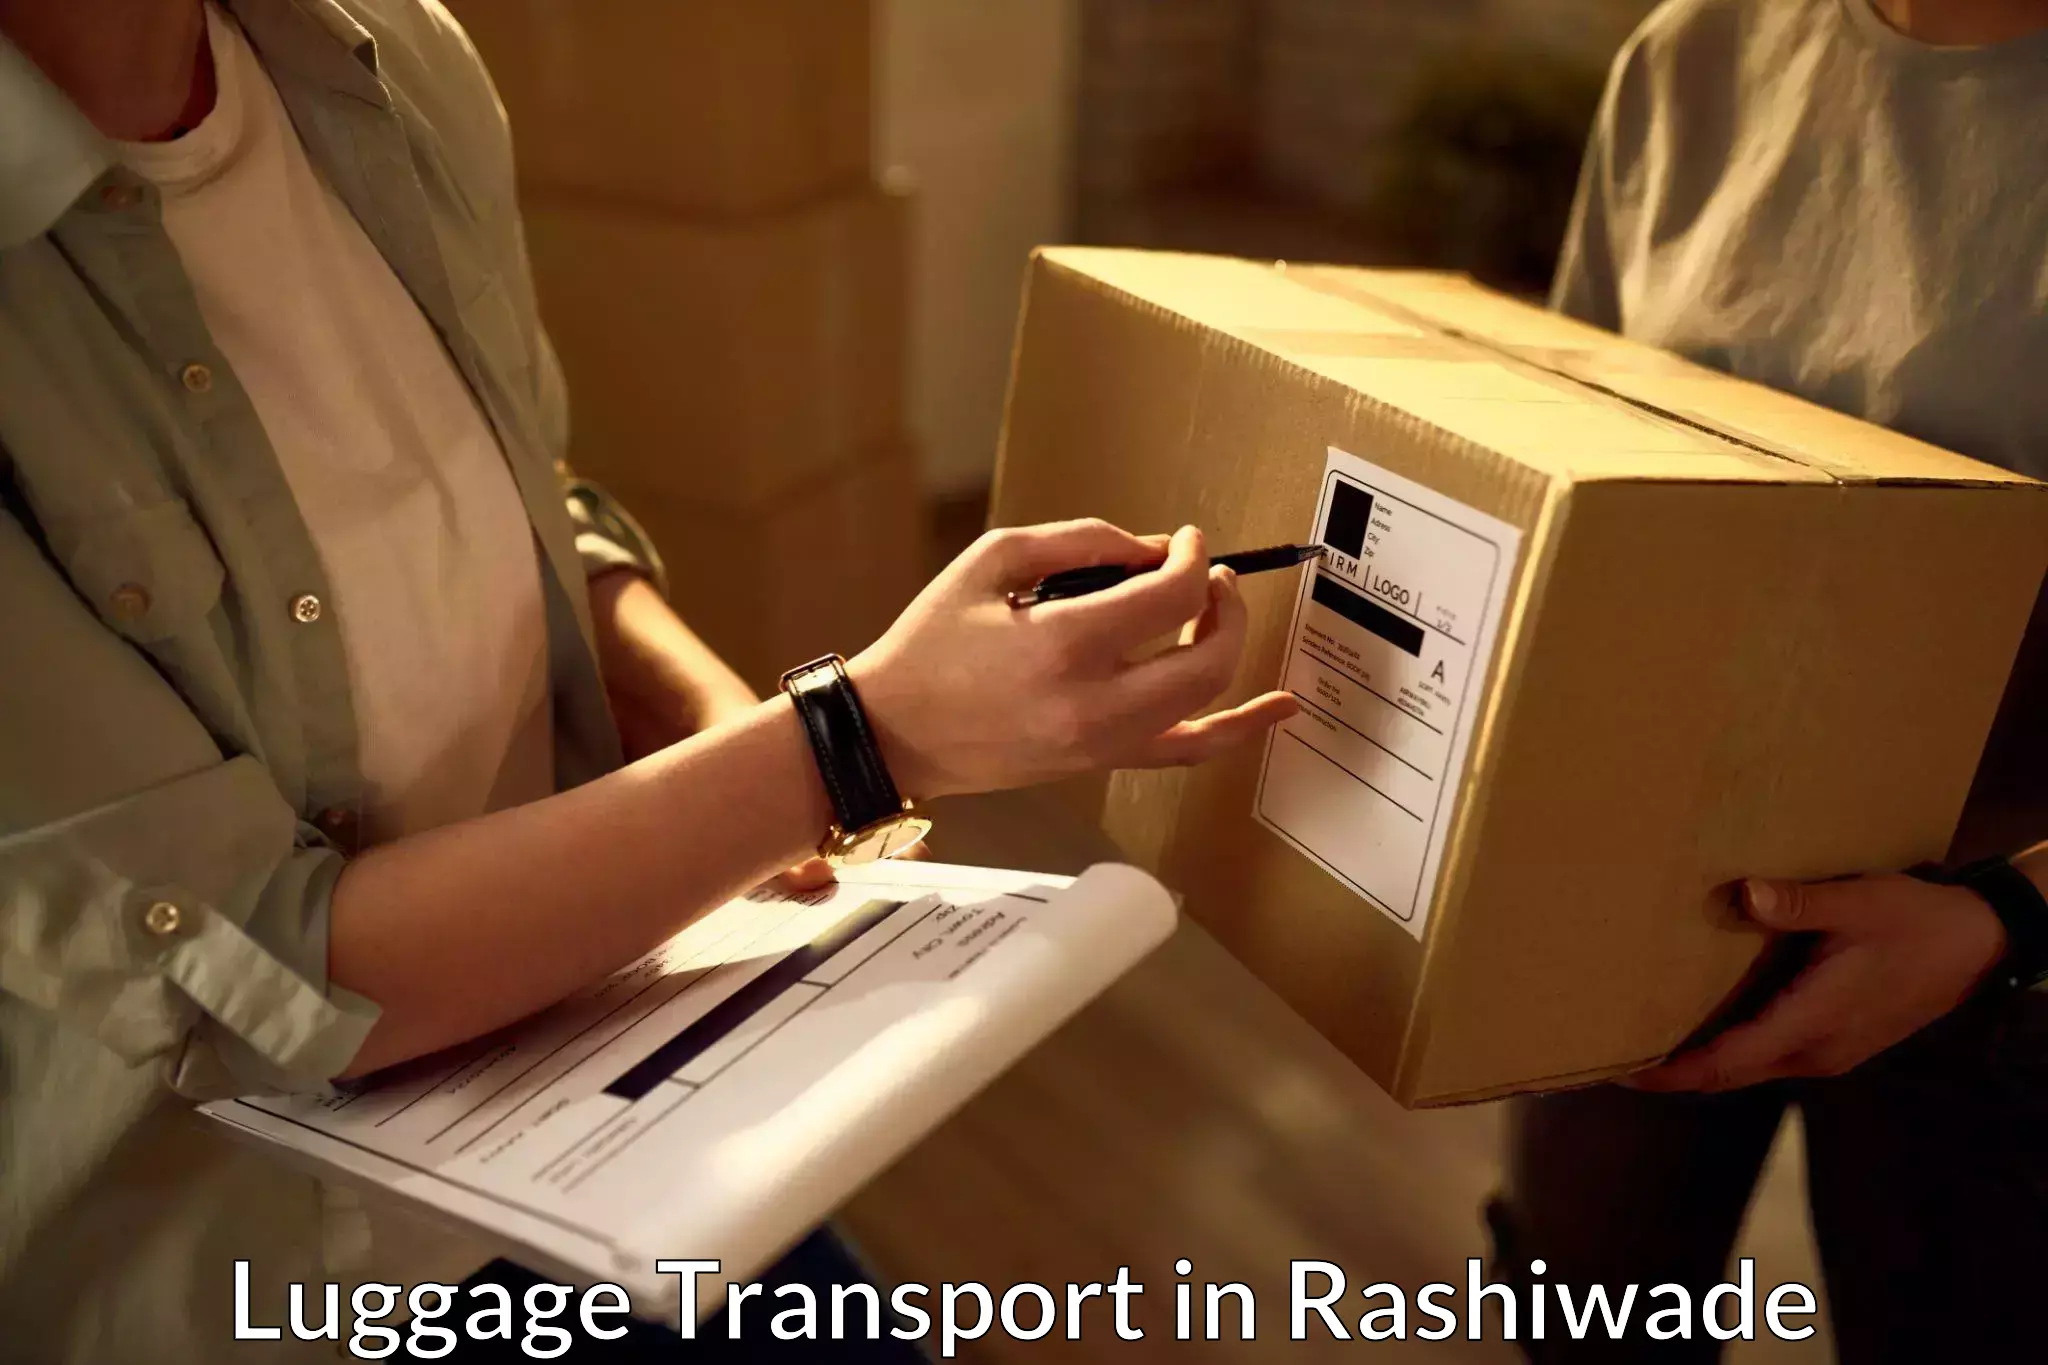 Baggage transport updates in Rashiwade